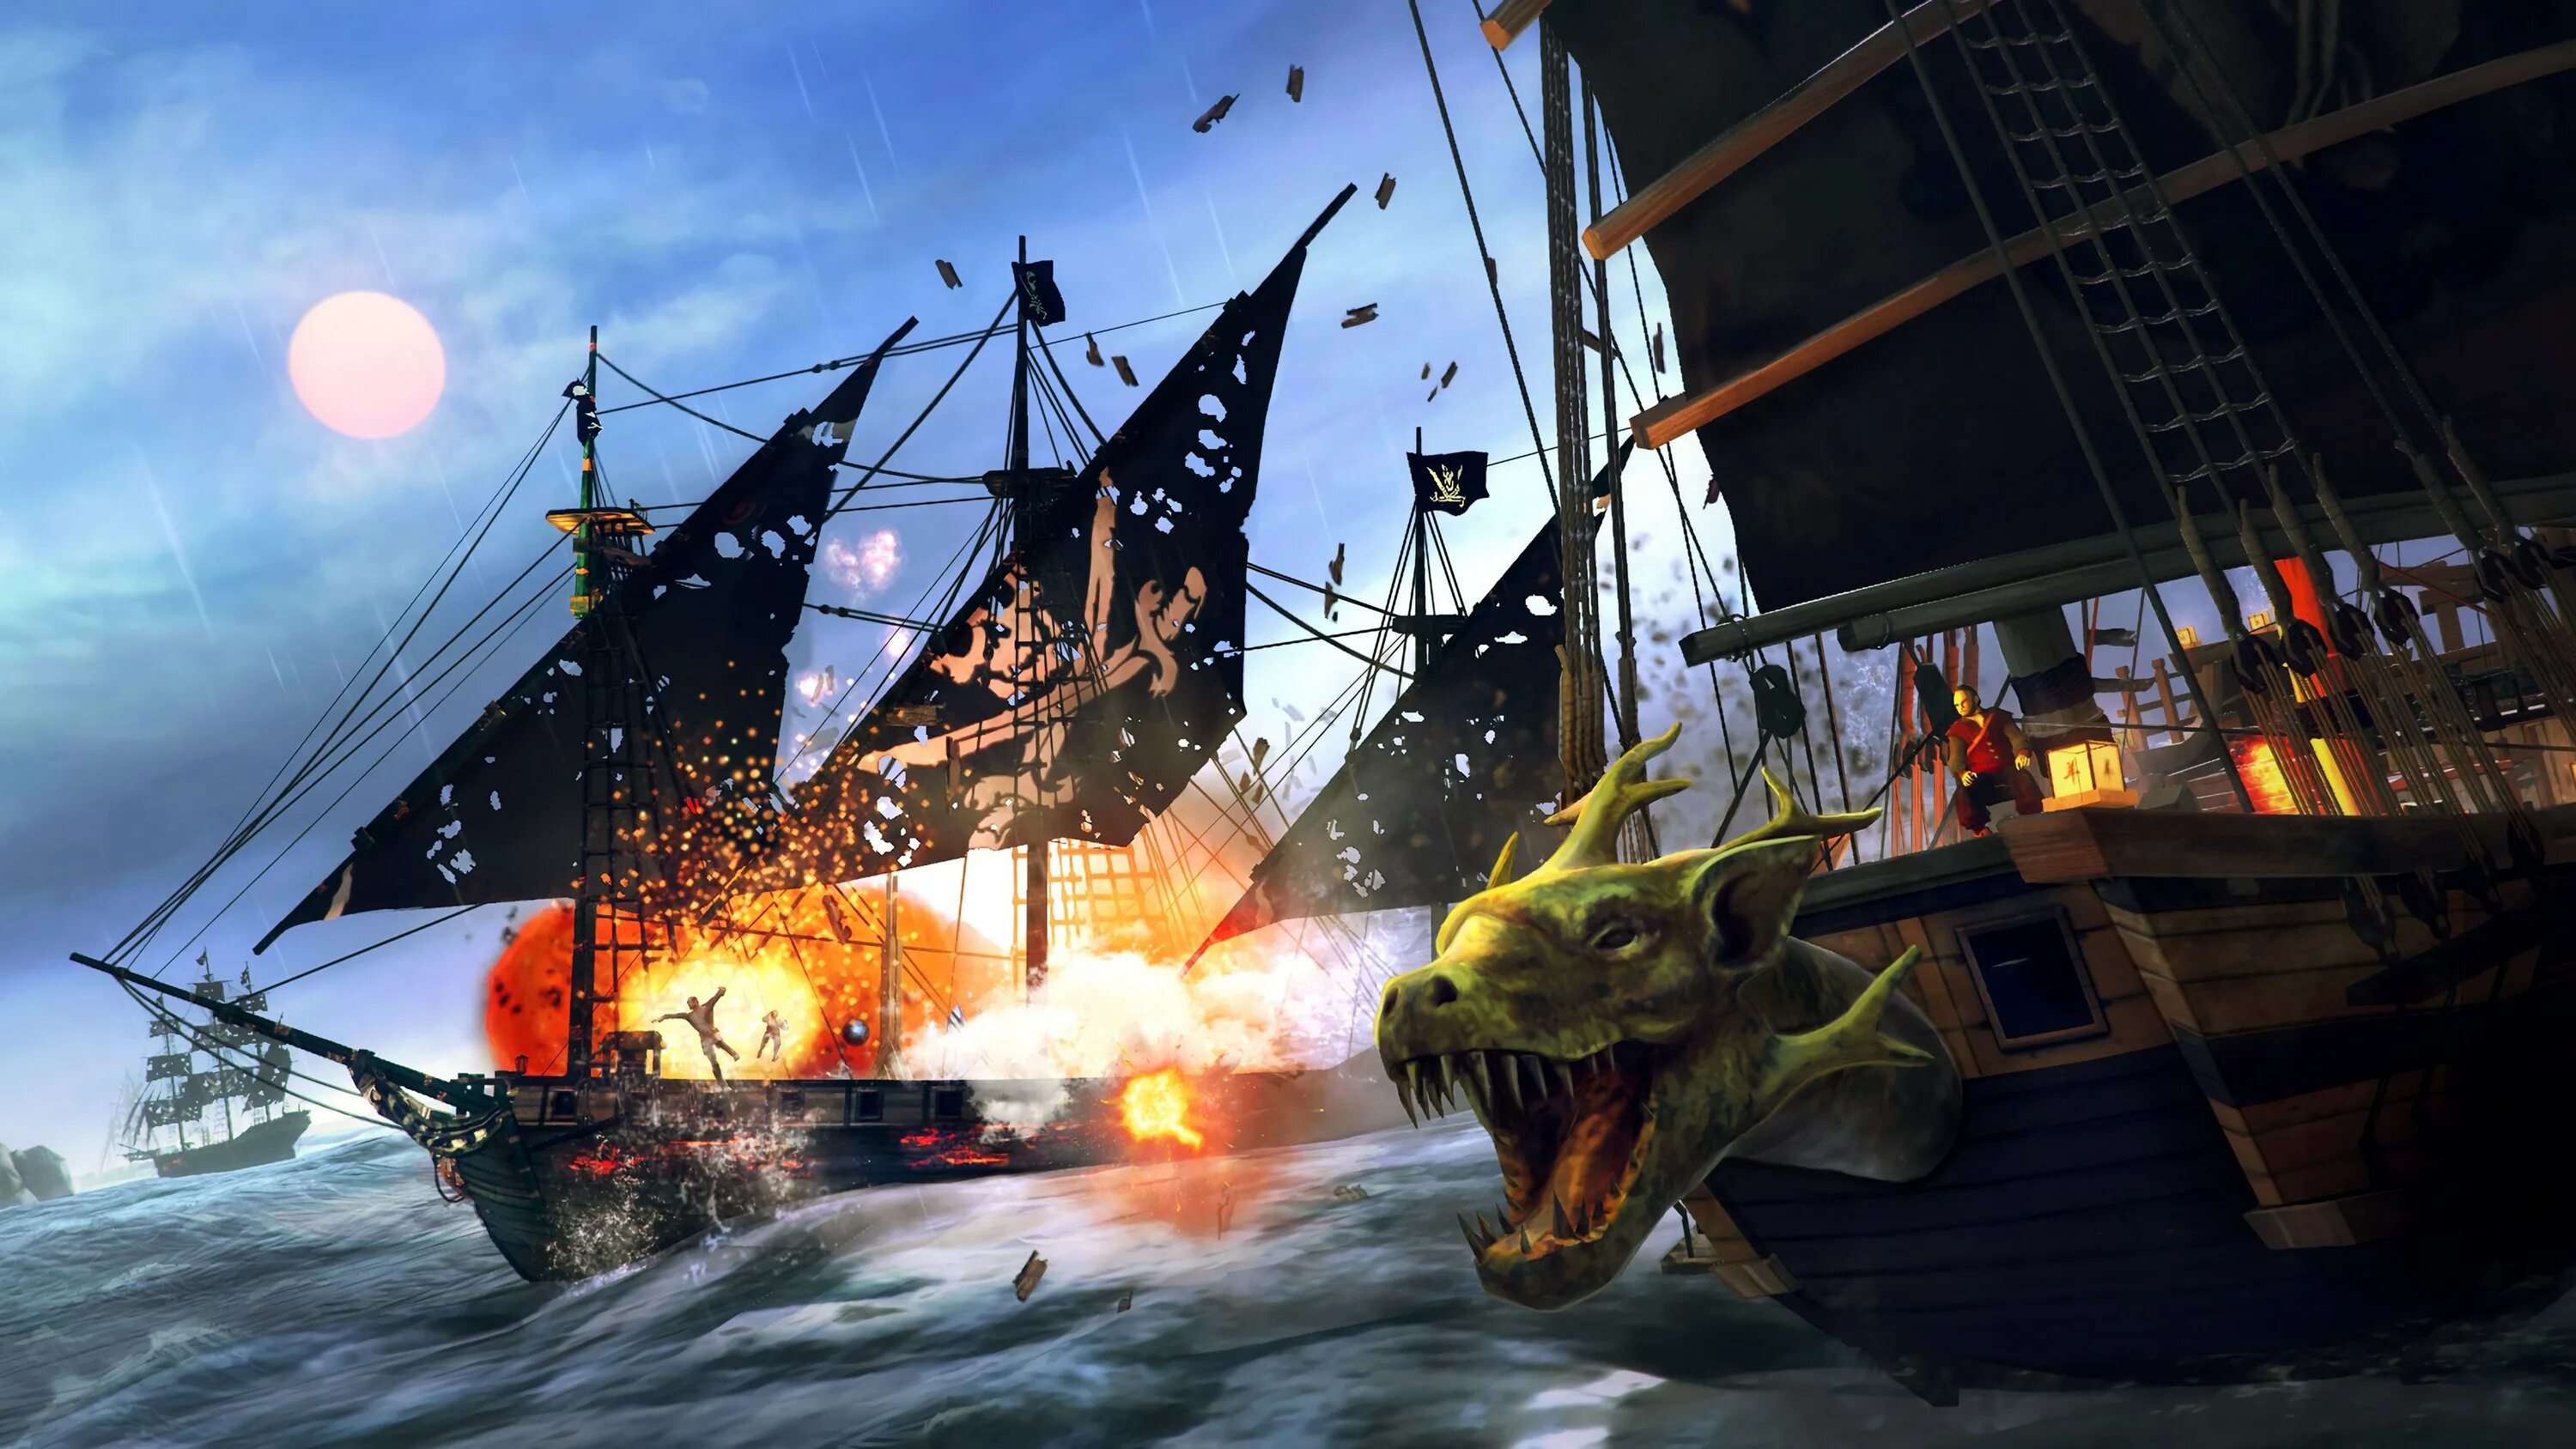 Tempest: Pirate Action RPG. Under the Jolly Roger игра. Пиратский корабль. Игра про корабли и пиратов. Игры про пиратов с открытым миром